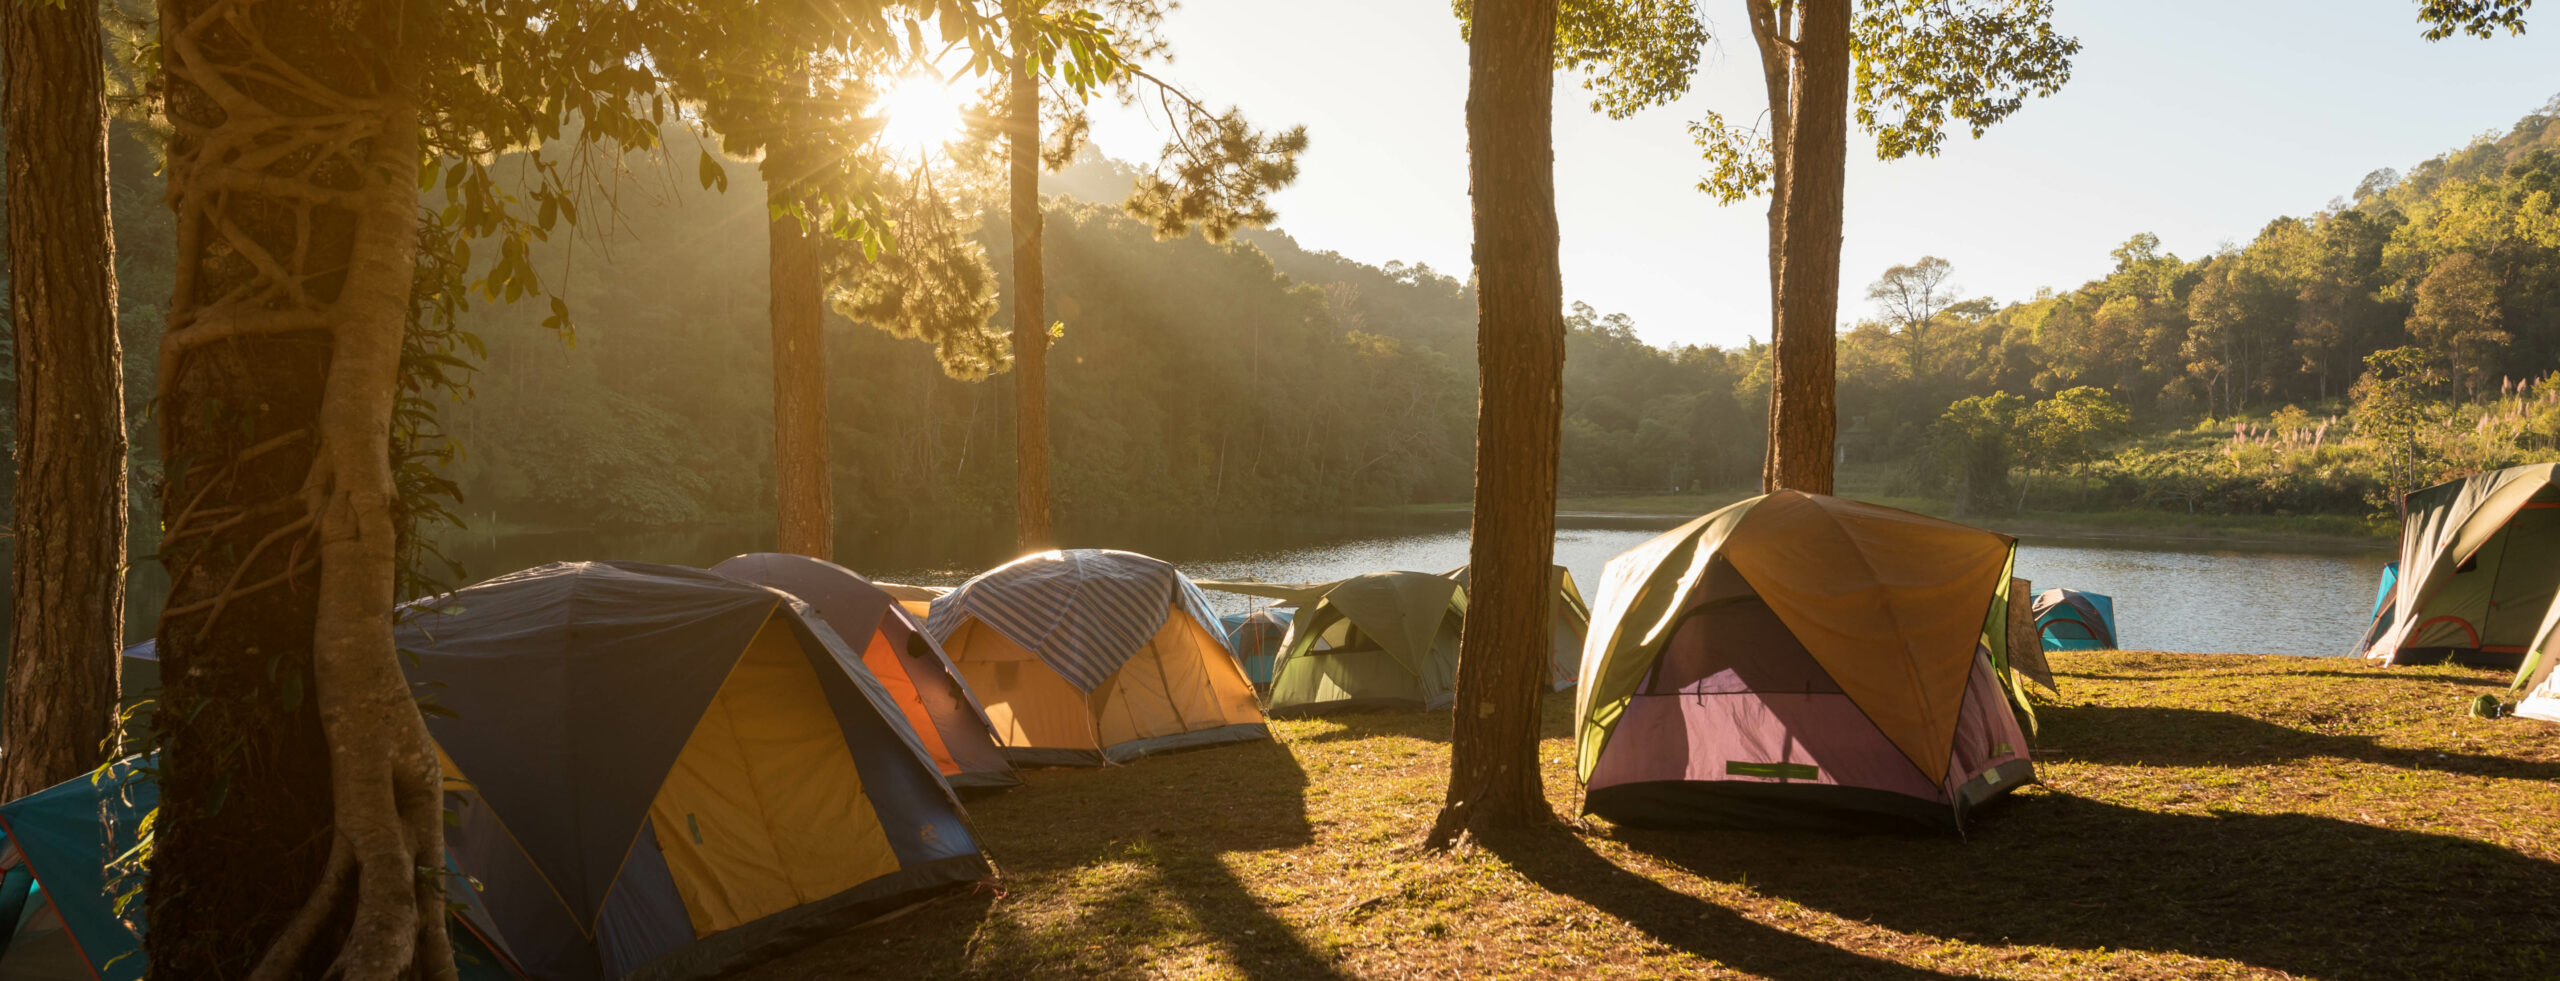 Mit dem Zelt campen gehen.